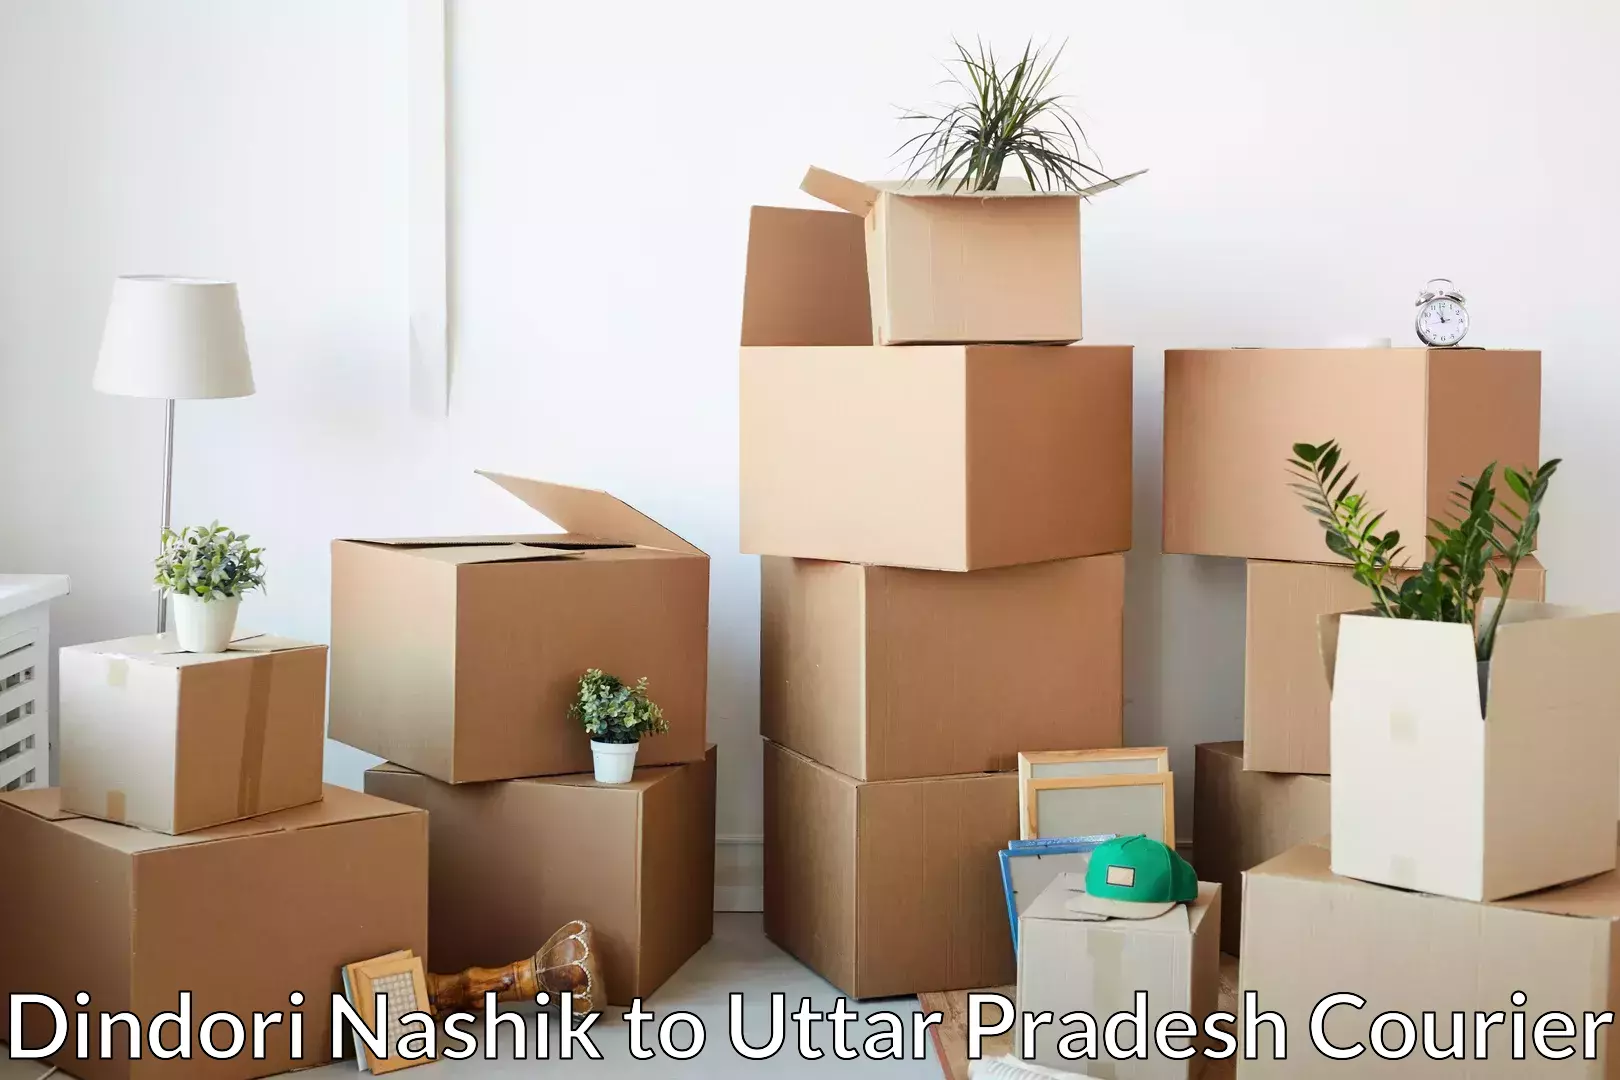 Furniture delivery service Dindori Nashik to Tilhar